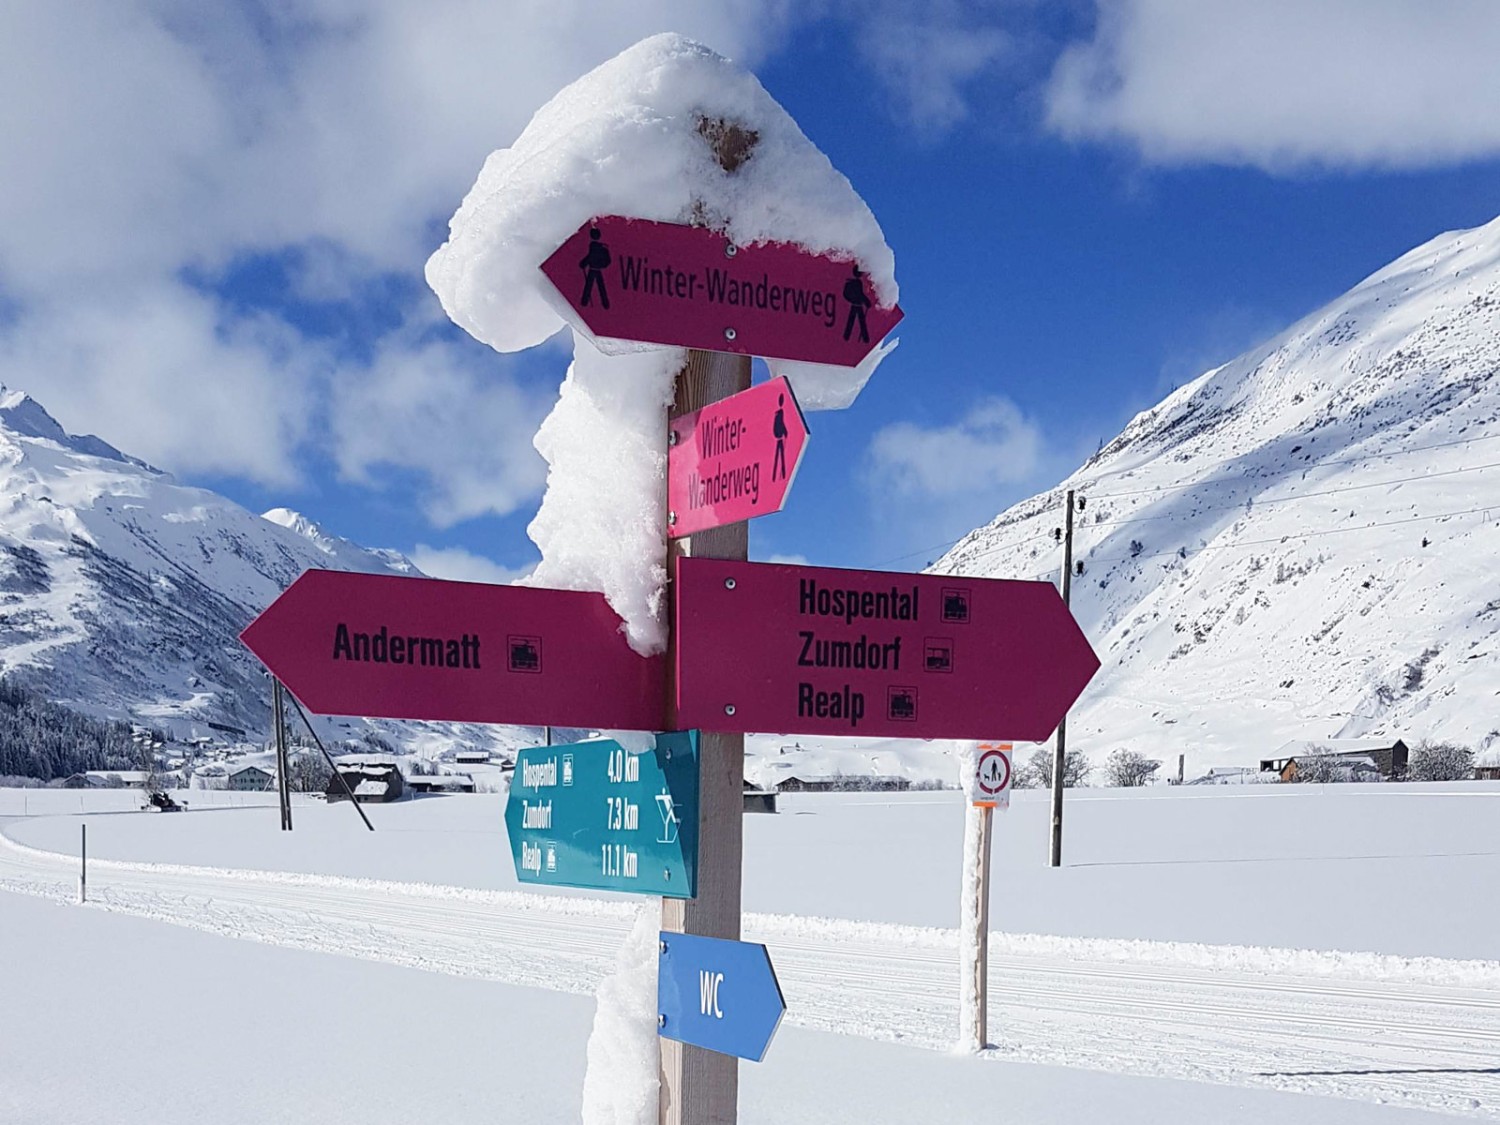 Indicateur de direction du chemin de randonnée hivernale à Andermatt. Photo: Laura Riedi